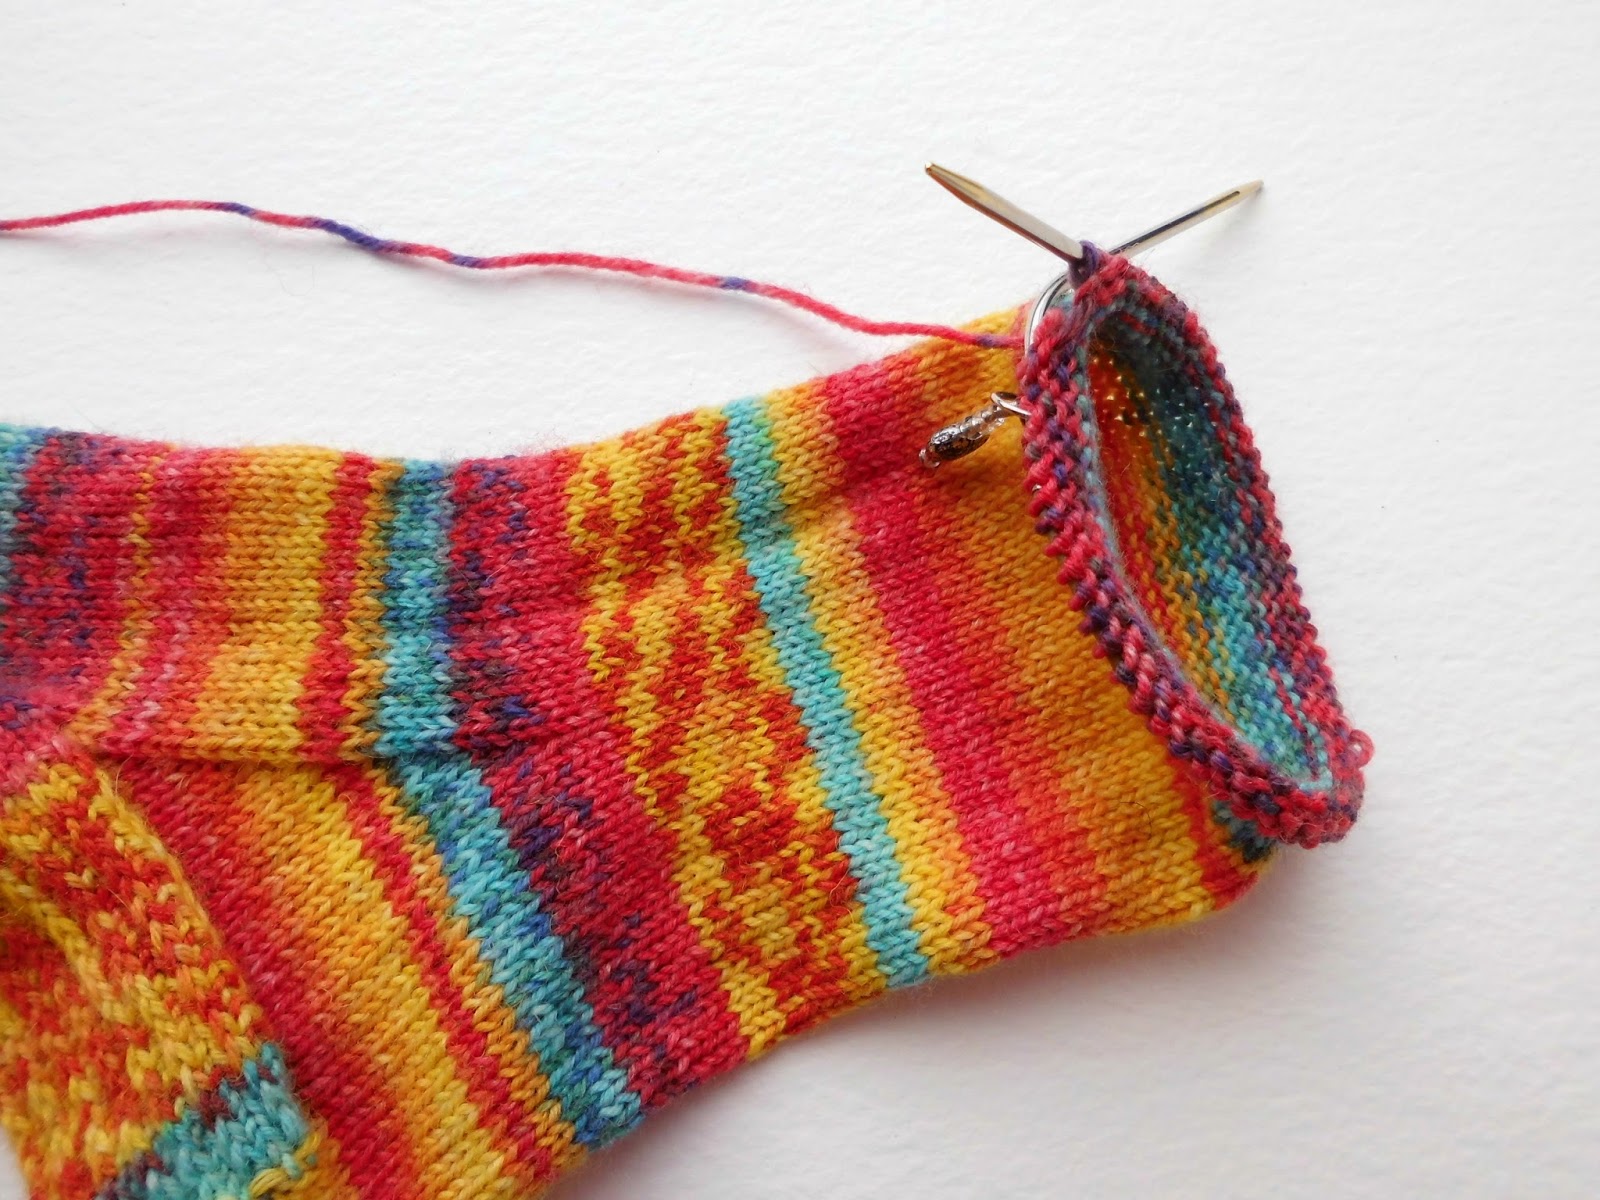 Winwick Mum Beginner sock knitting Sockalong Week 3 Foot, toe and